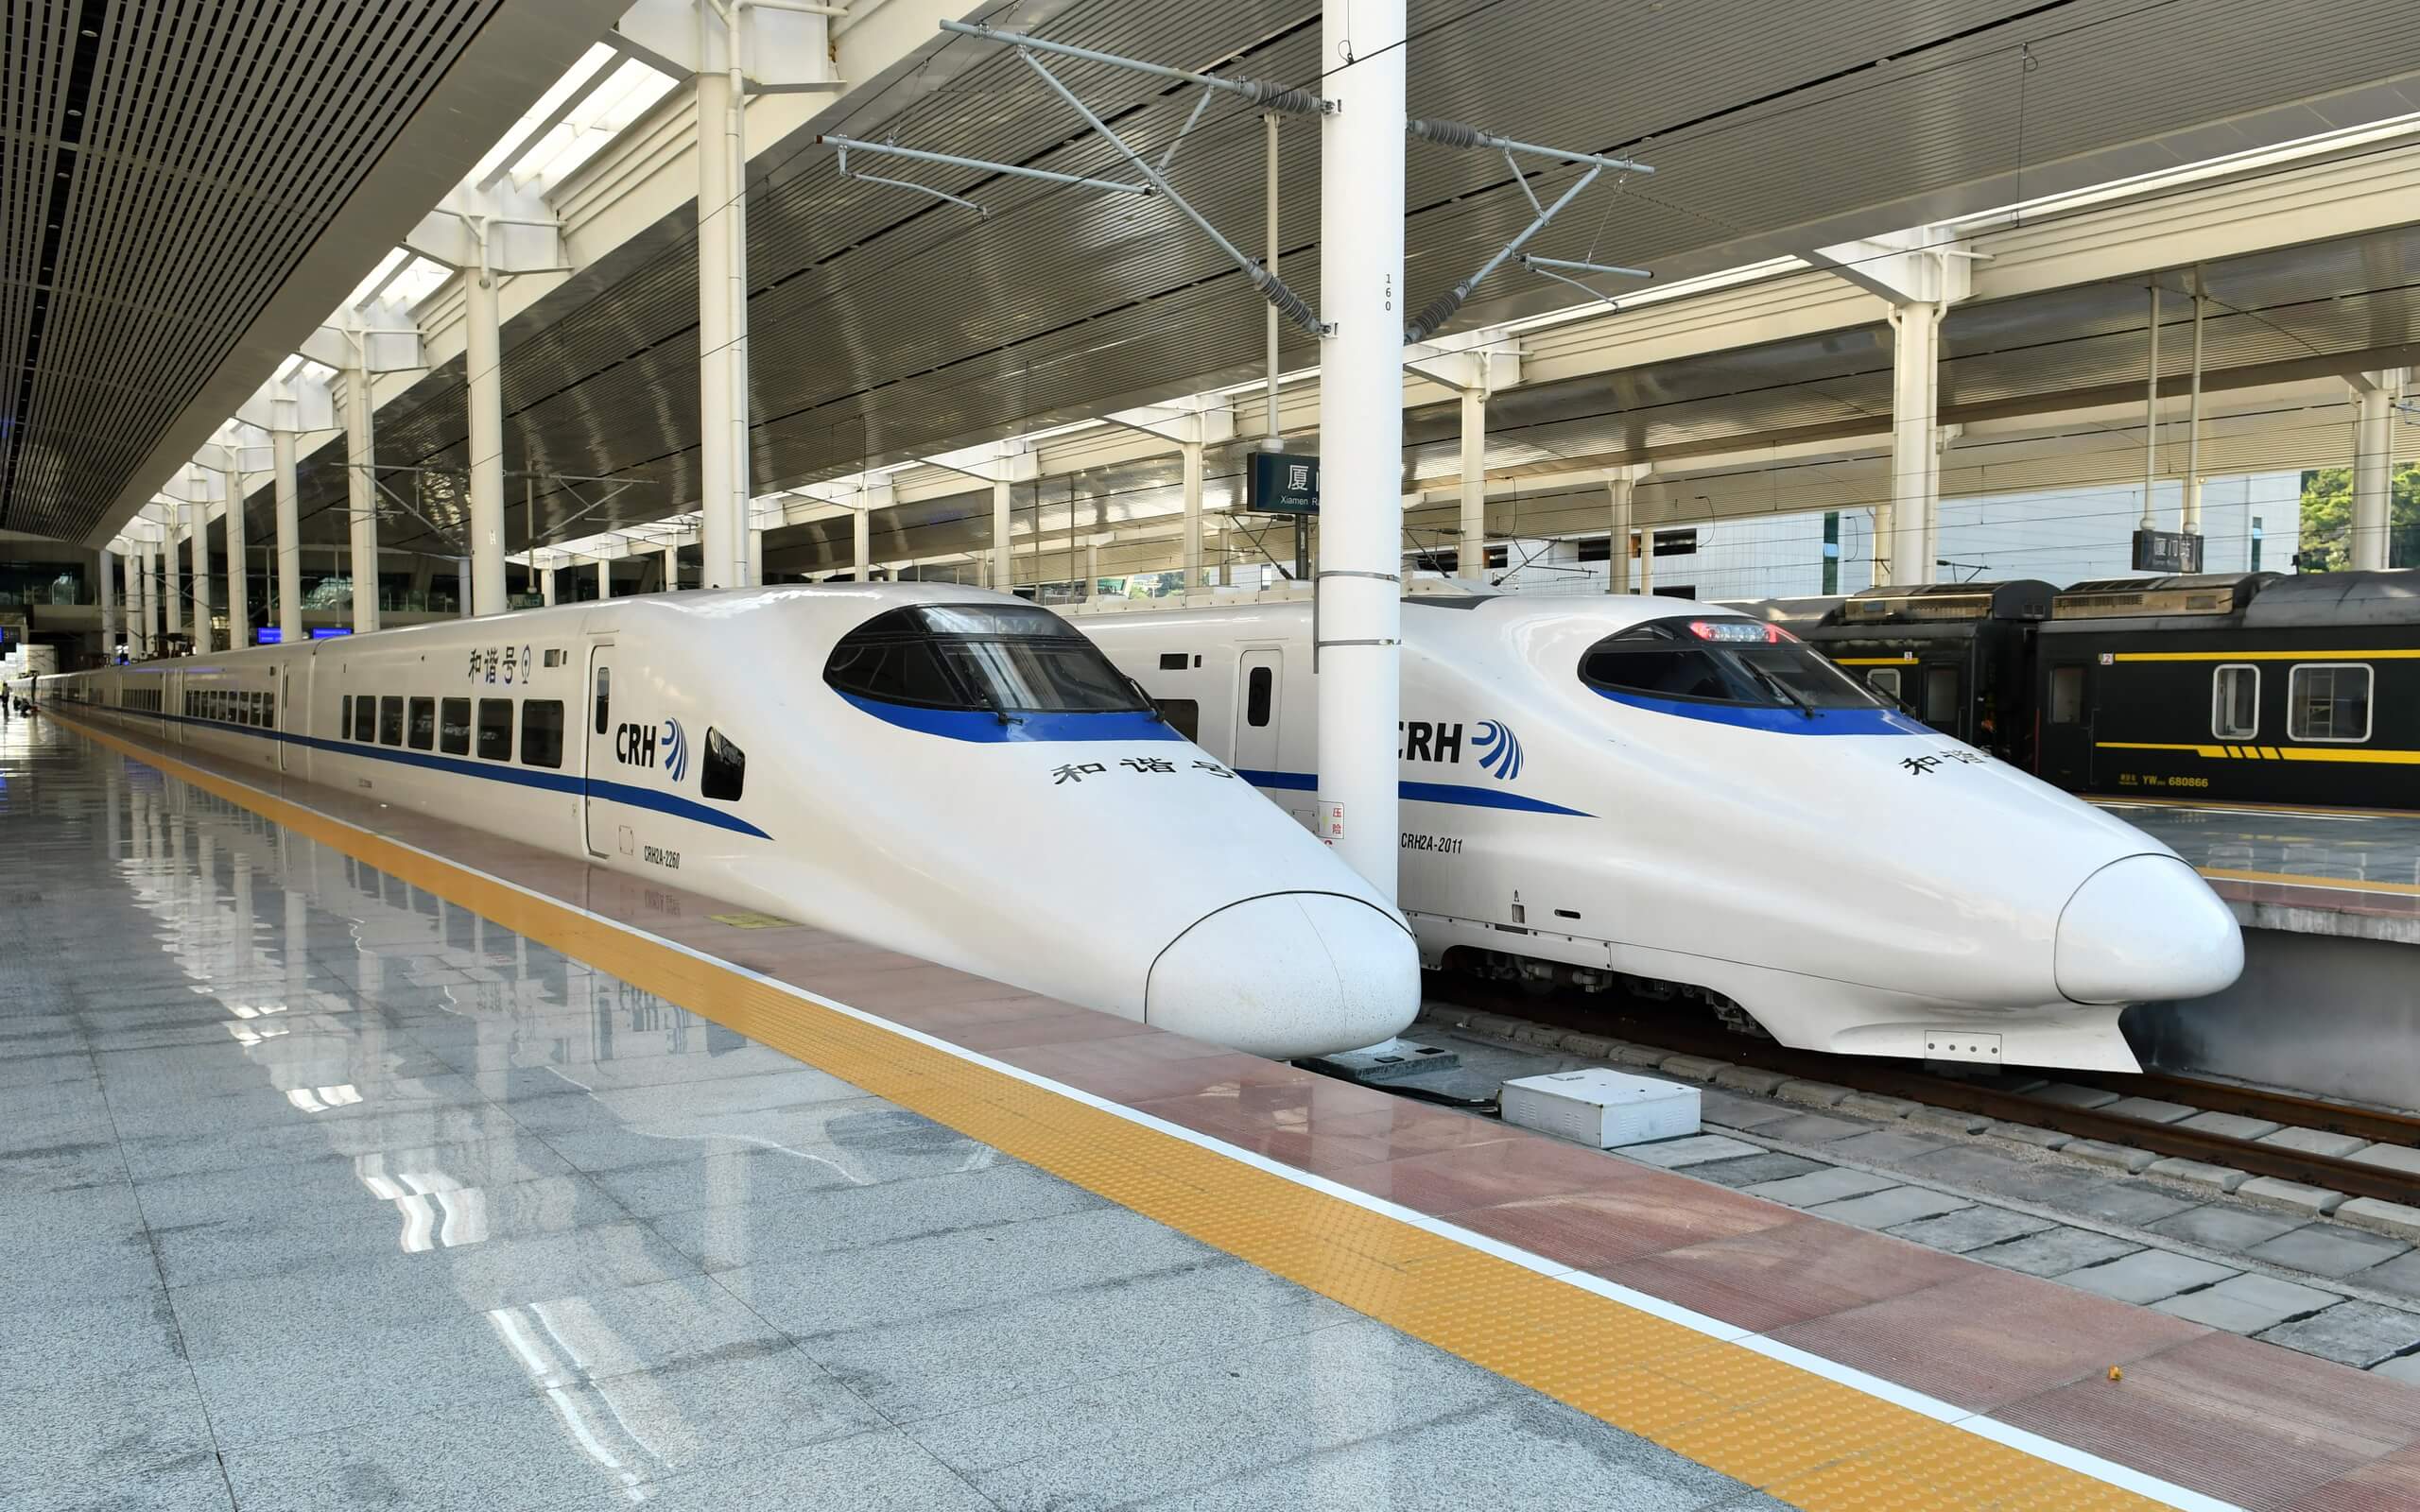 CRH2A-2260&2011_at_Xiamen_Railway_Station_20170727 (1).jpg